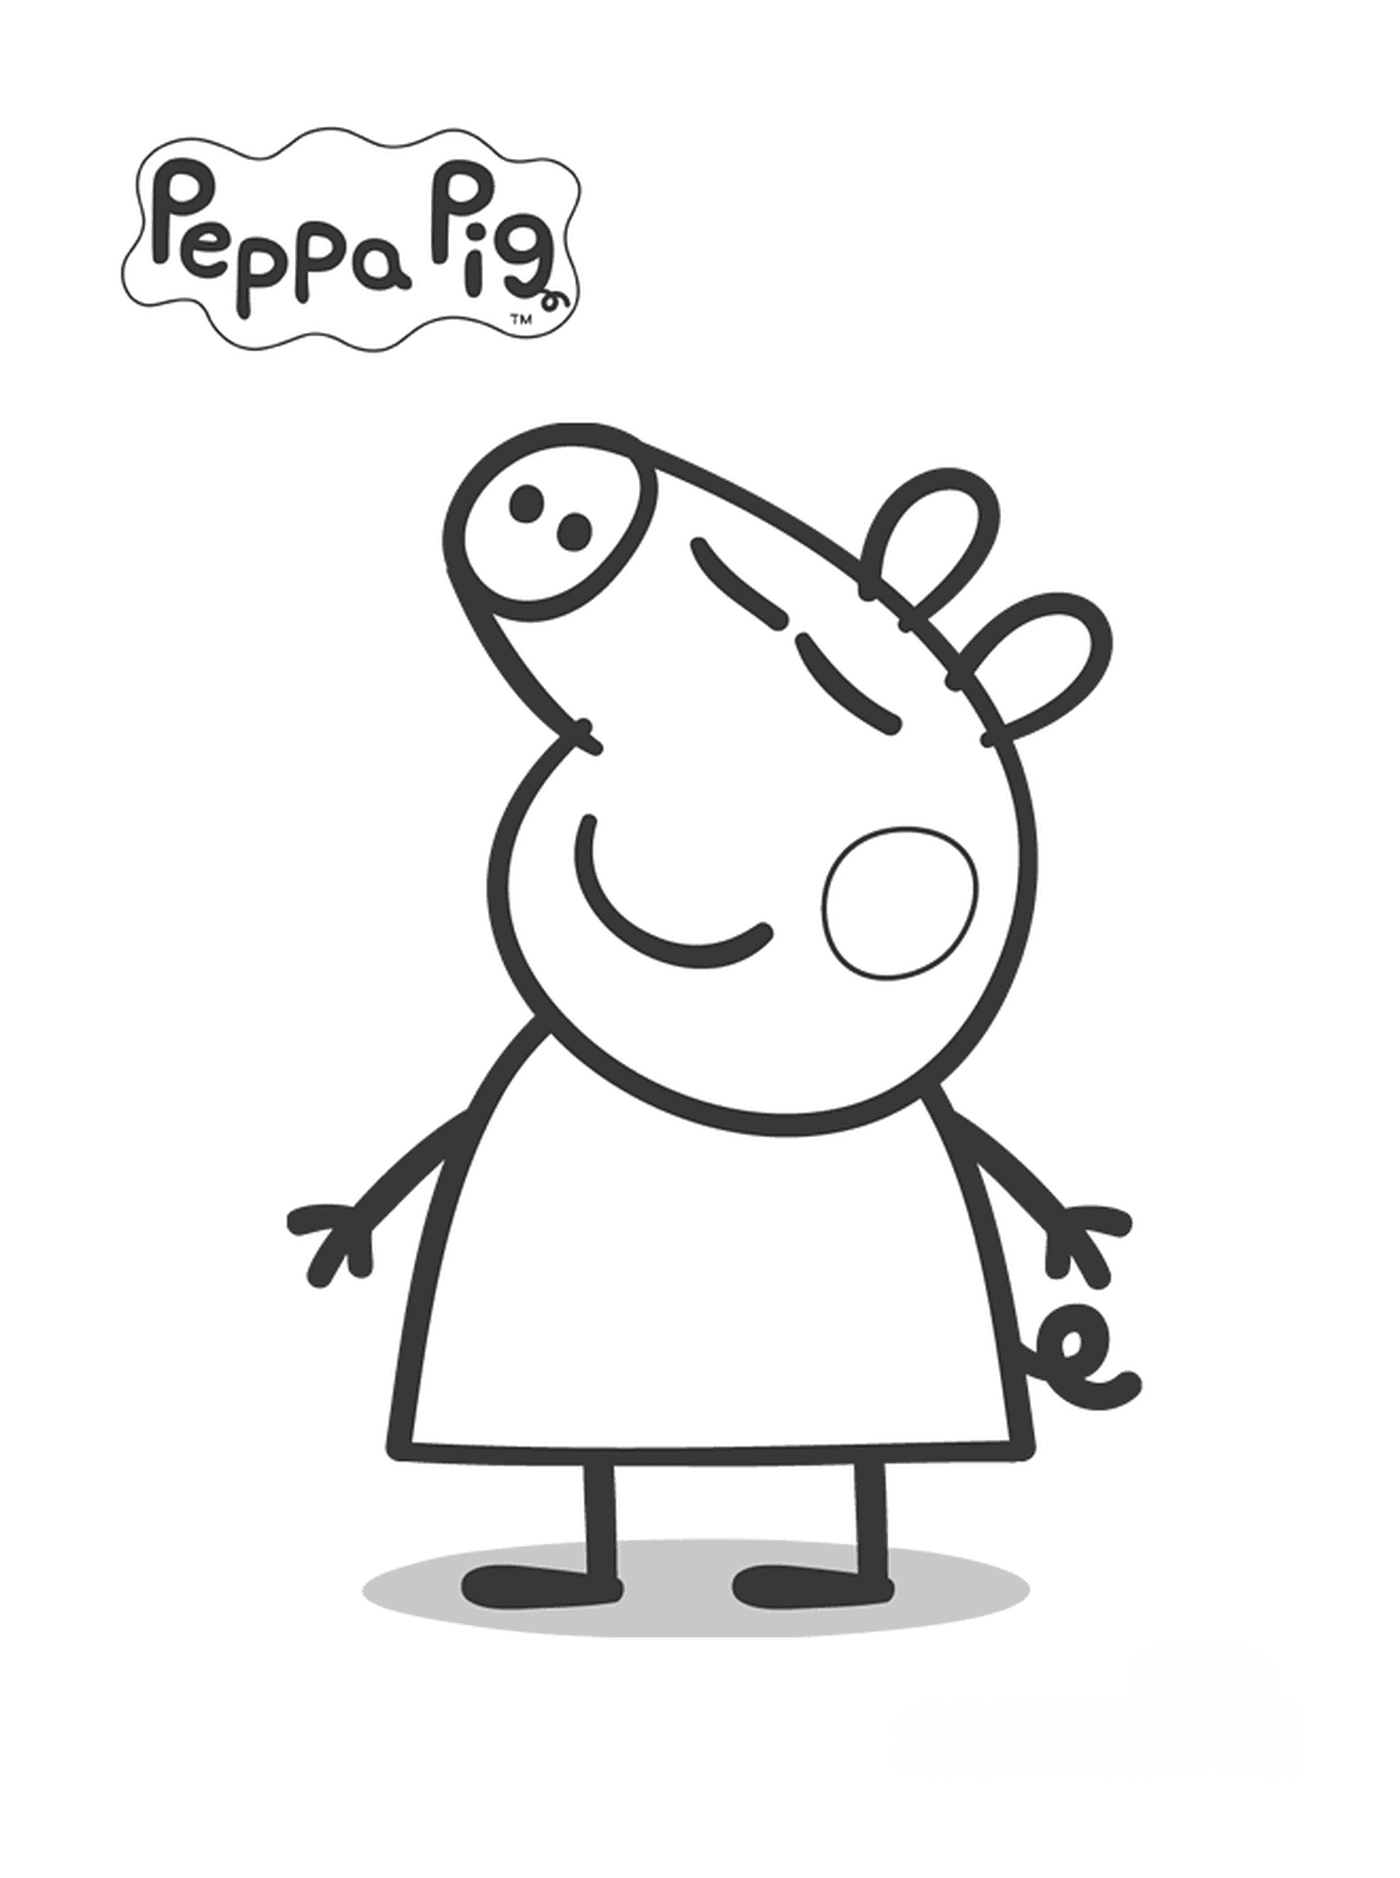   Peppa Pig avec une bulle de pensée au-dessus 